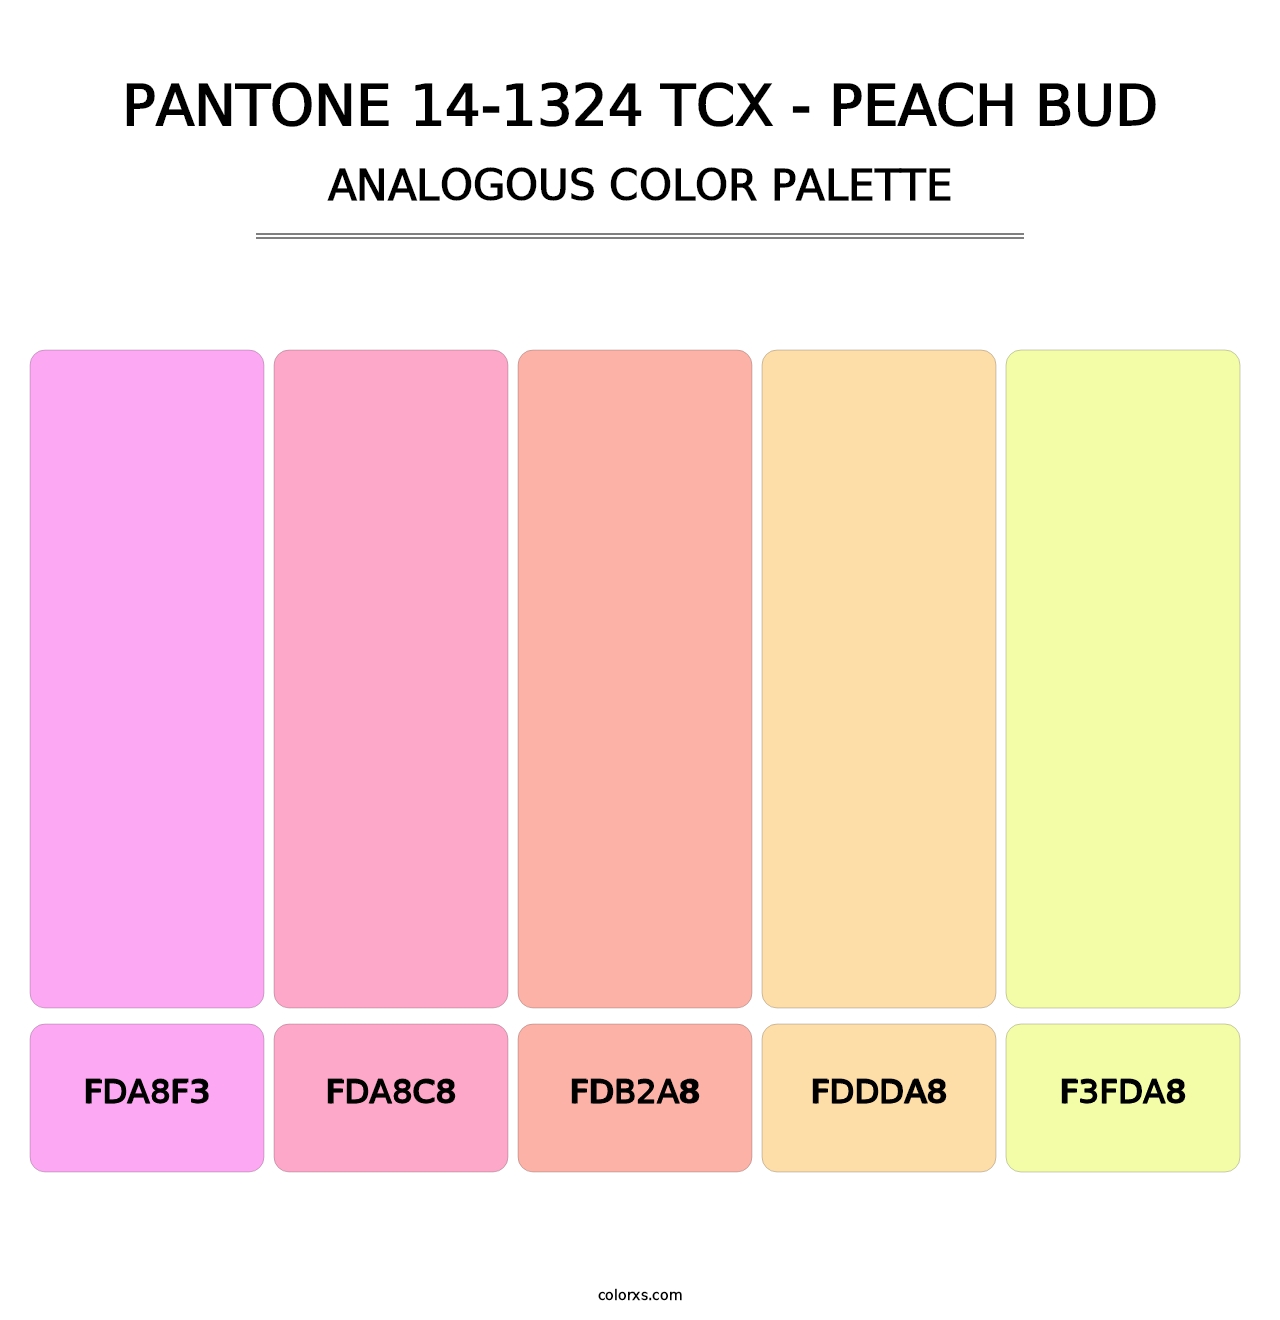 PANTONE 14-1324 TCX - Peach Bud - Analogous Color Palette